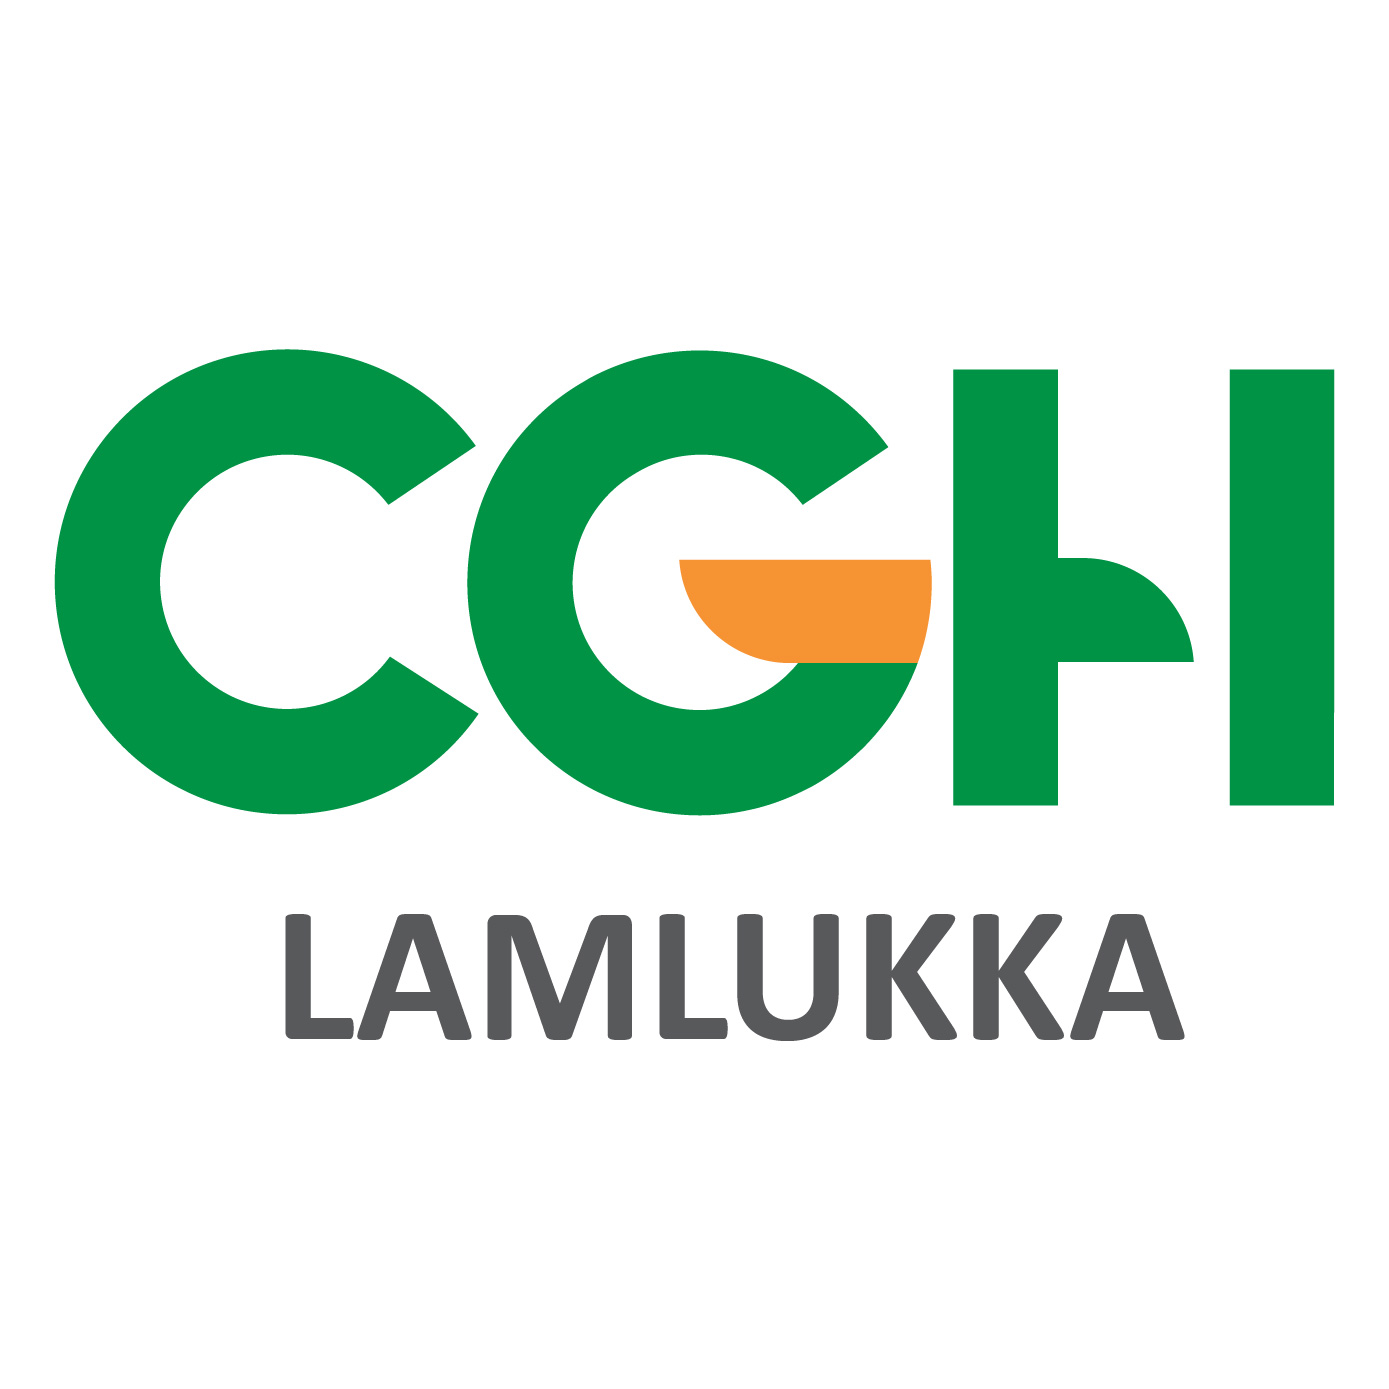 Cgh Hospital Lamlukka 01